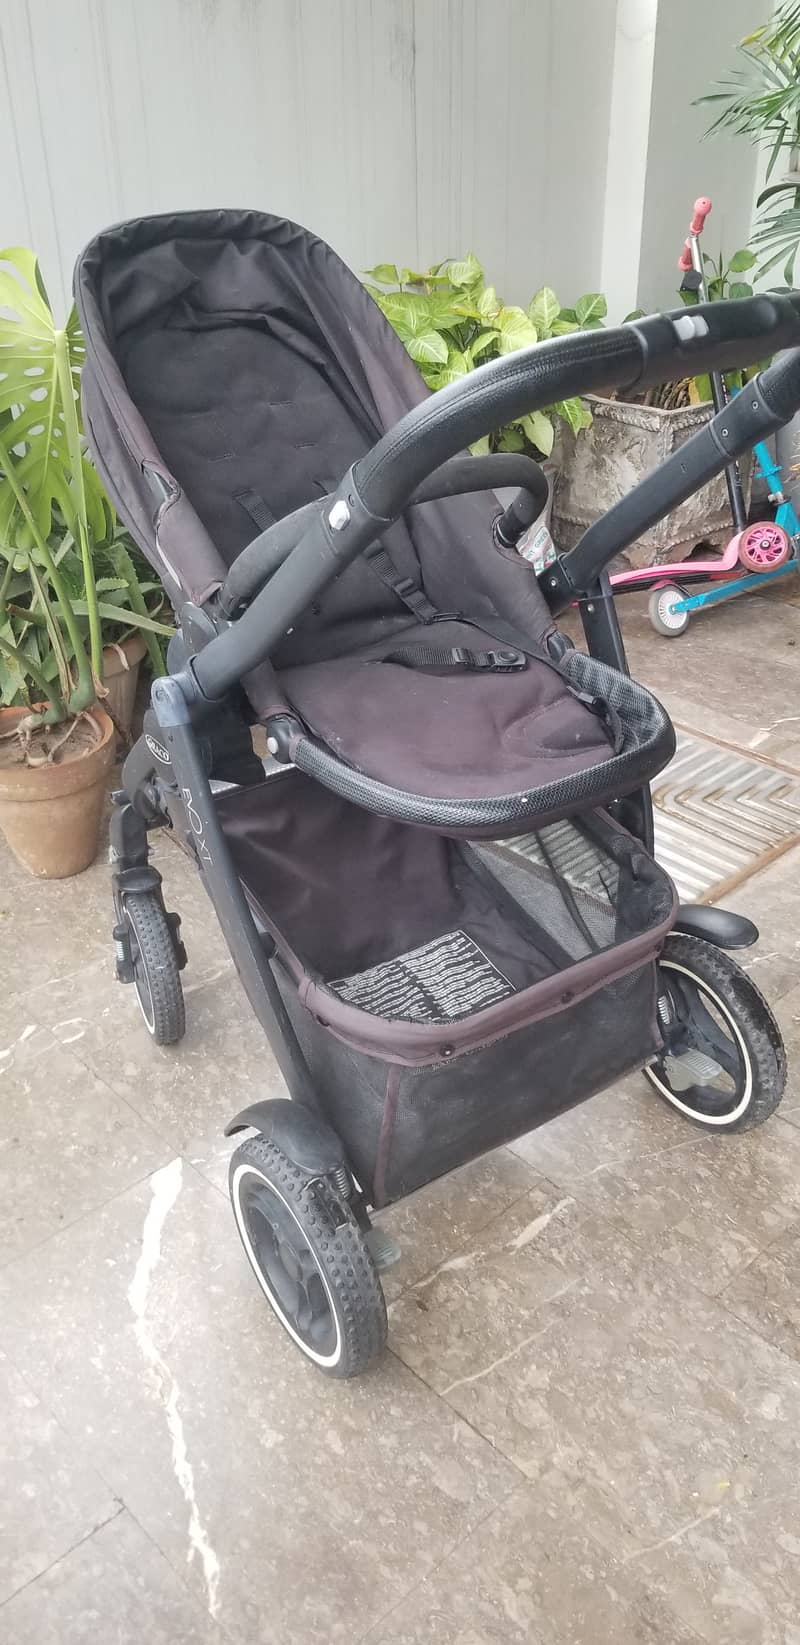 Baby graco evo stroller/pram 1